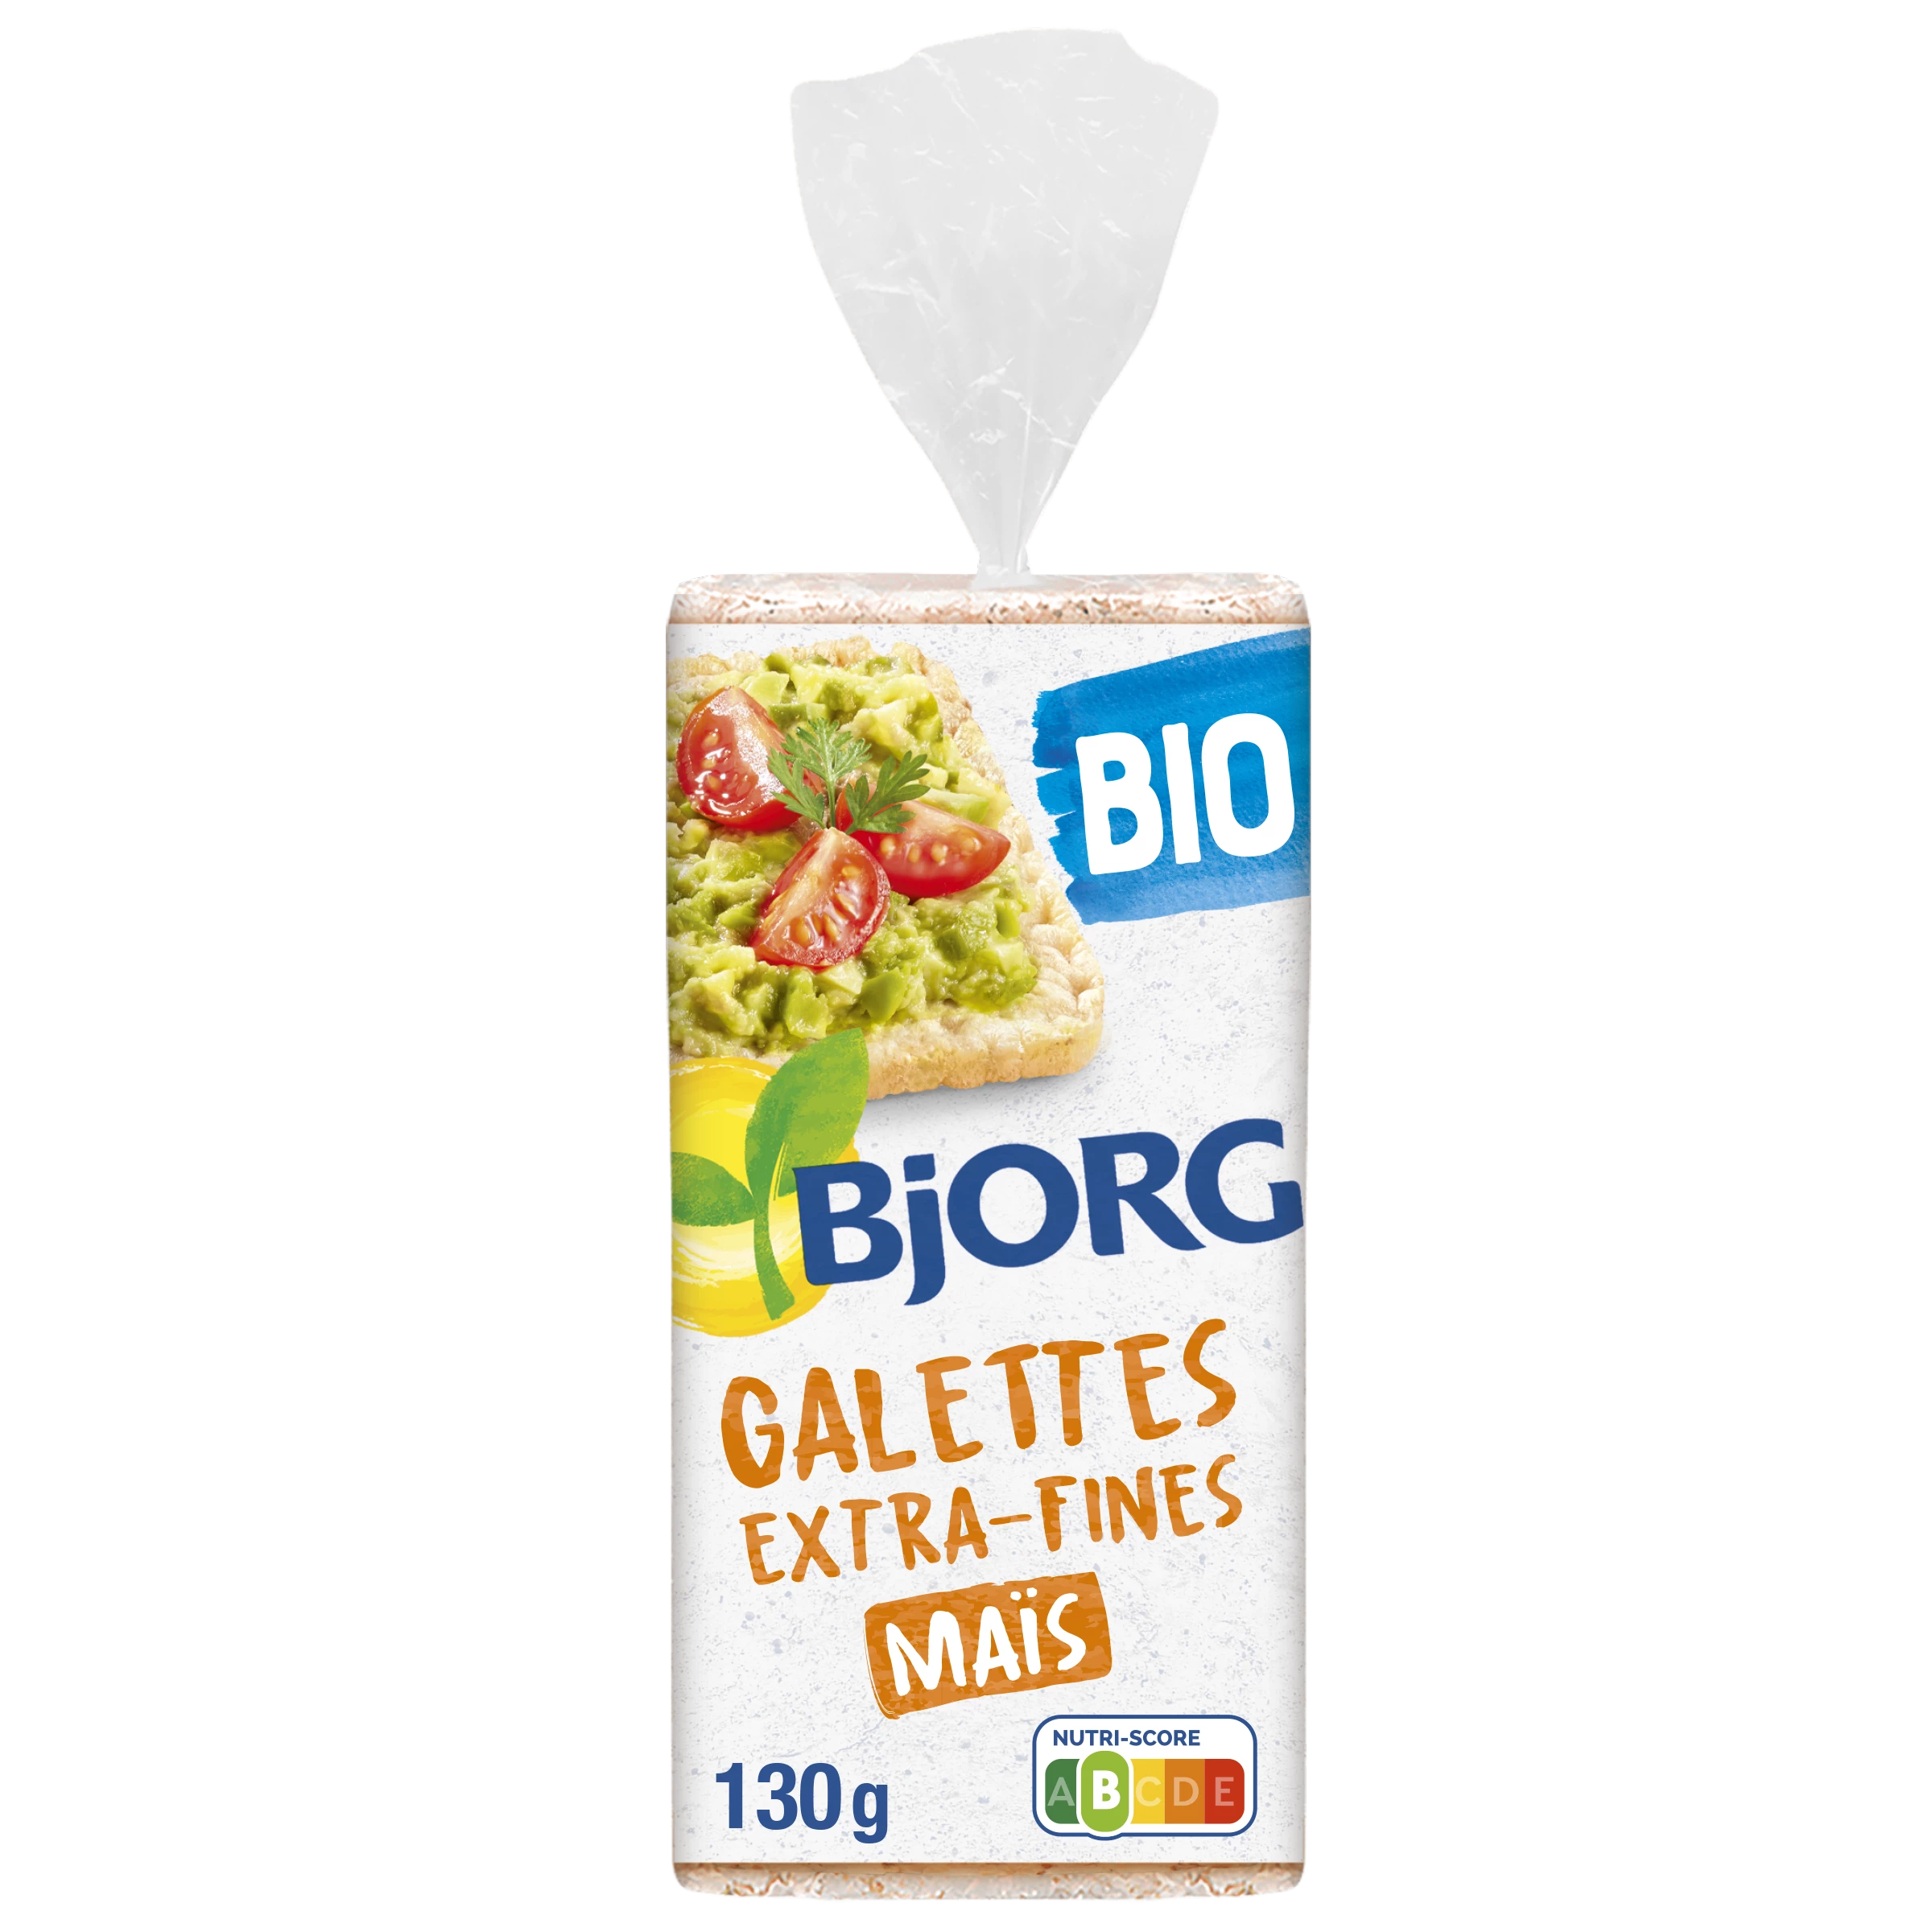 Galettes Mais Extra Fins Bio 130g - BJORG